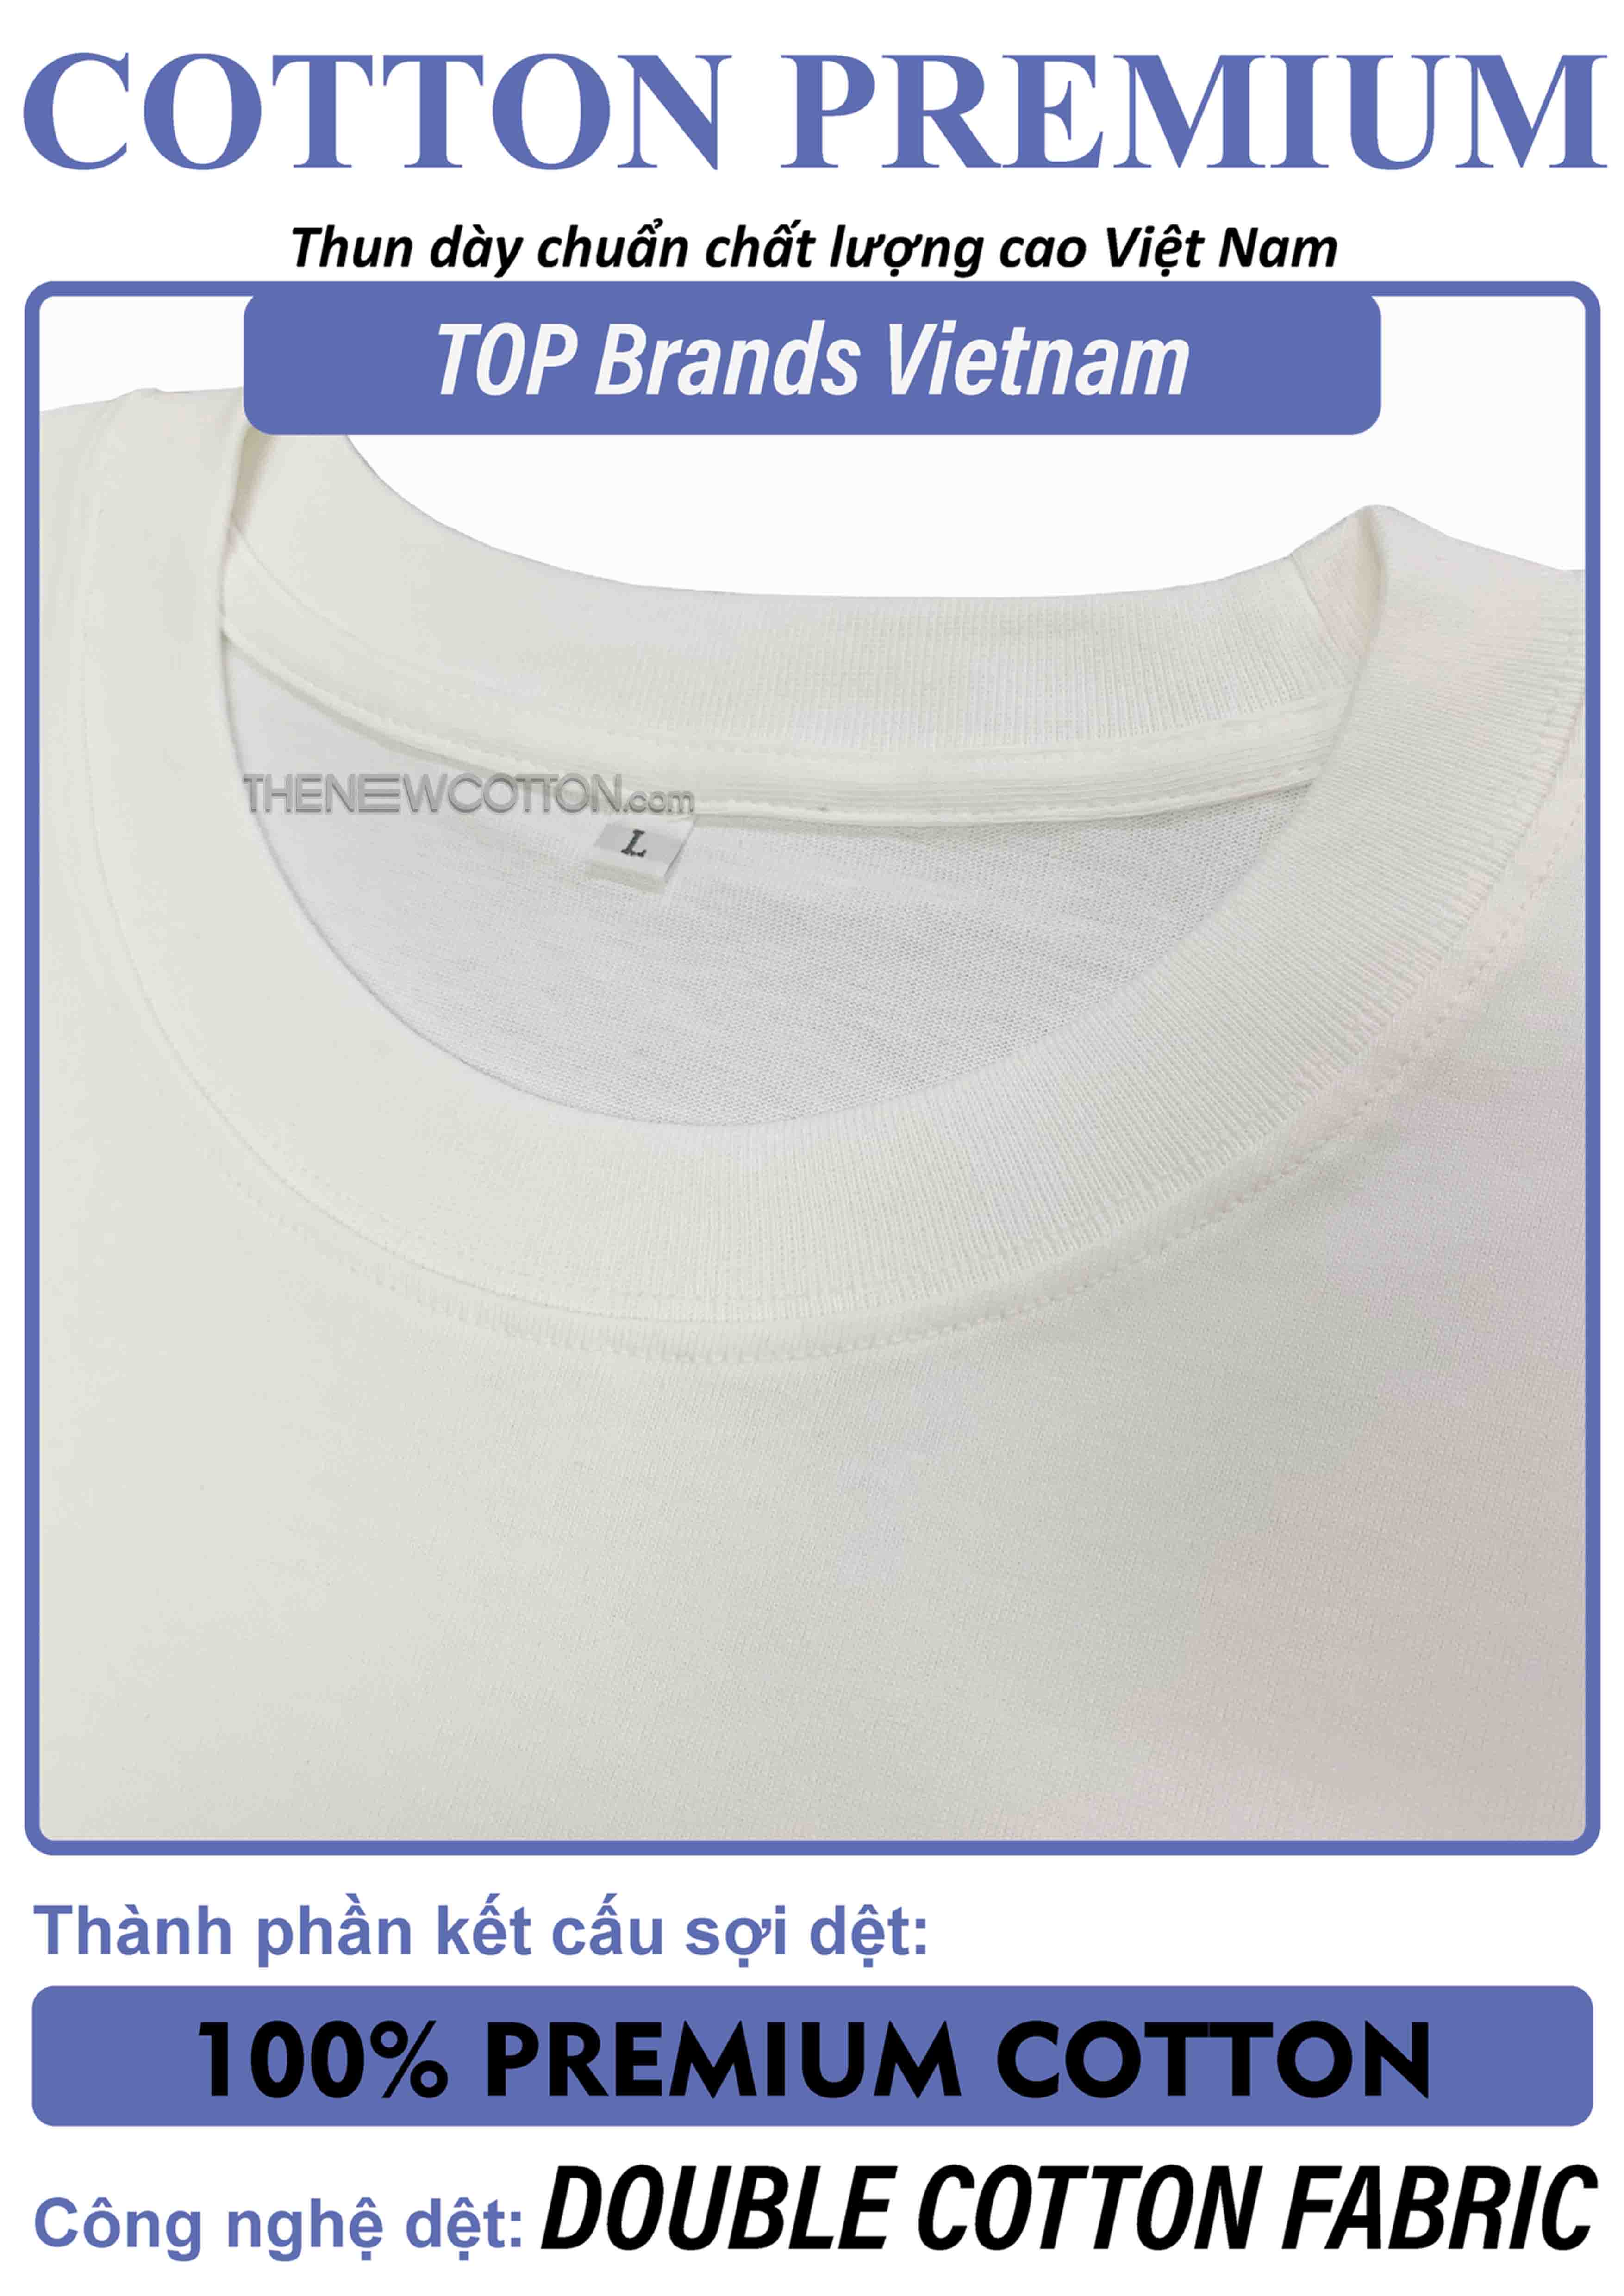 Chuyên Sỉ Phôi Áo Trơn x Vải Thun 100% Cotton Premium Brand (Top Local) | Xưởng May Local Brand Tp Hcm - TheNewCotton.com